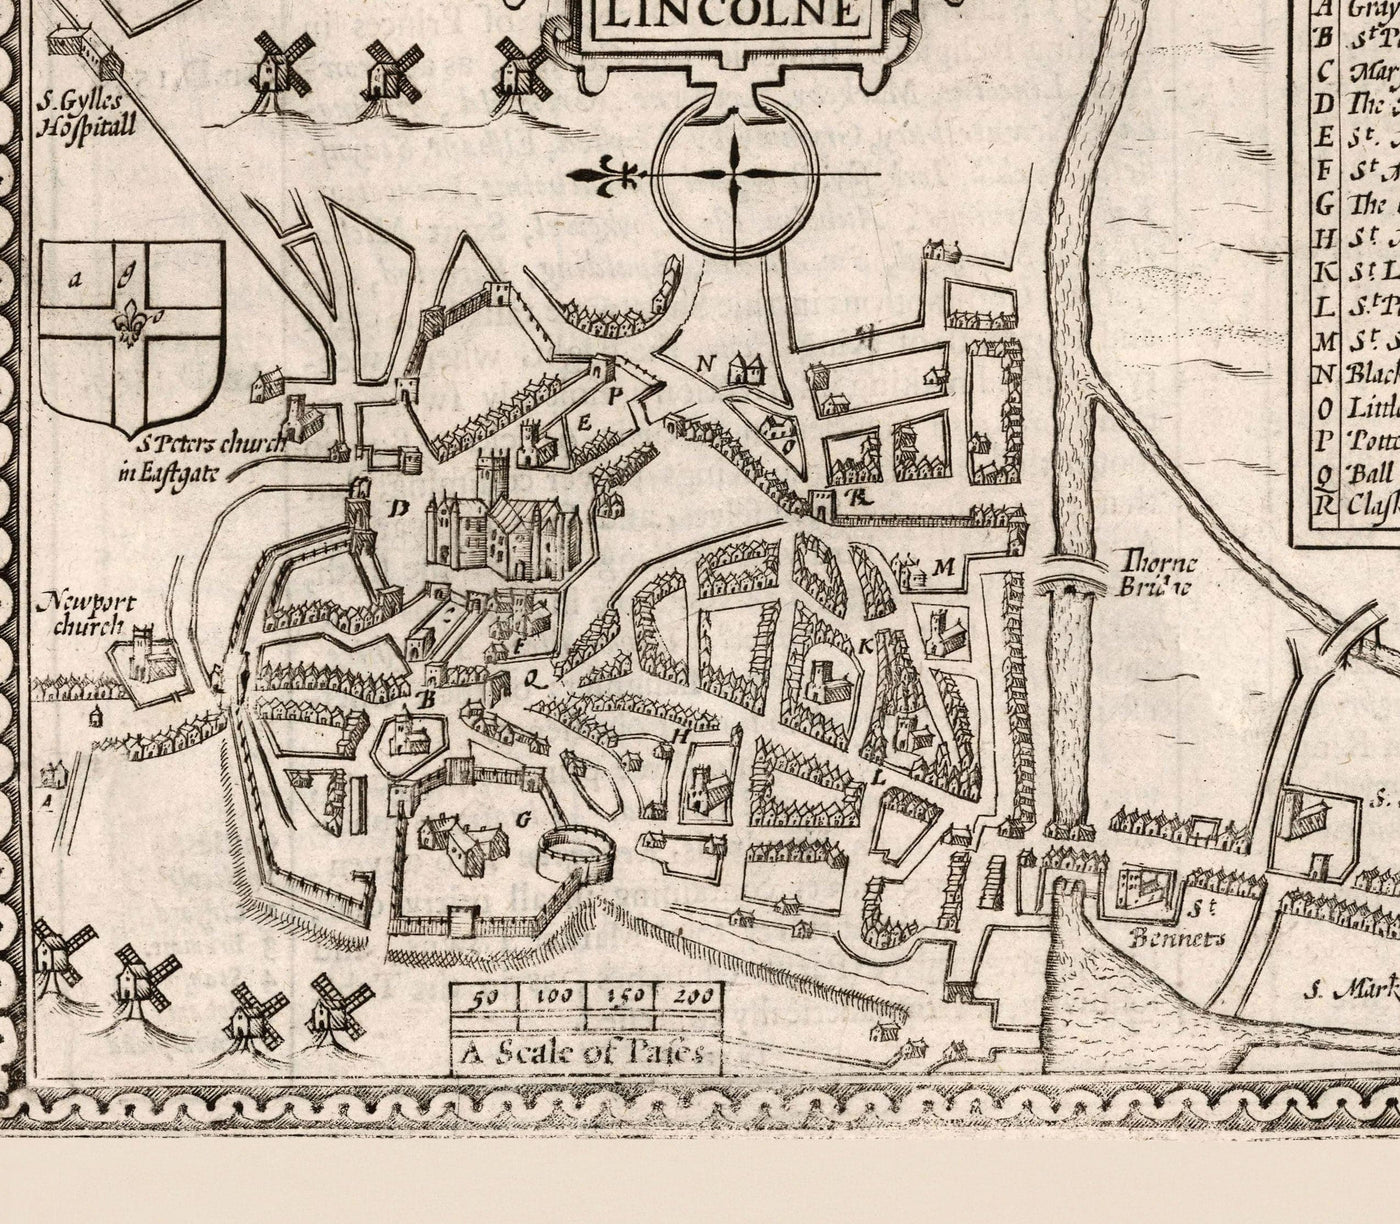 Alte monochrome Karte von Lincolnshire im Jahre 1611 per Geschwindigkeit - Lincoln, Grimsby, Grantham, Boston, Scohnthorpe, East Midlands